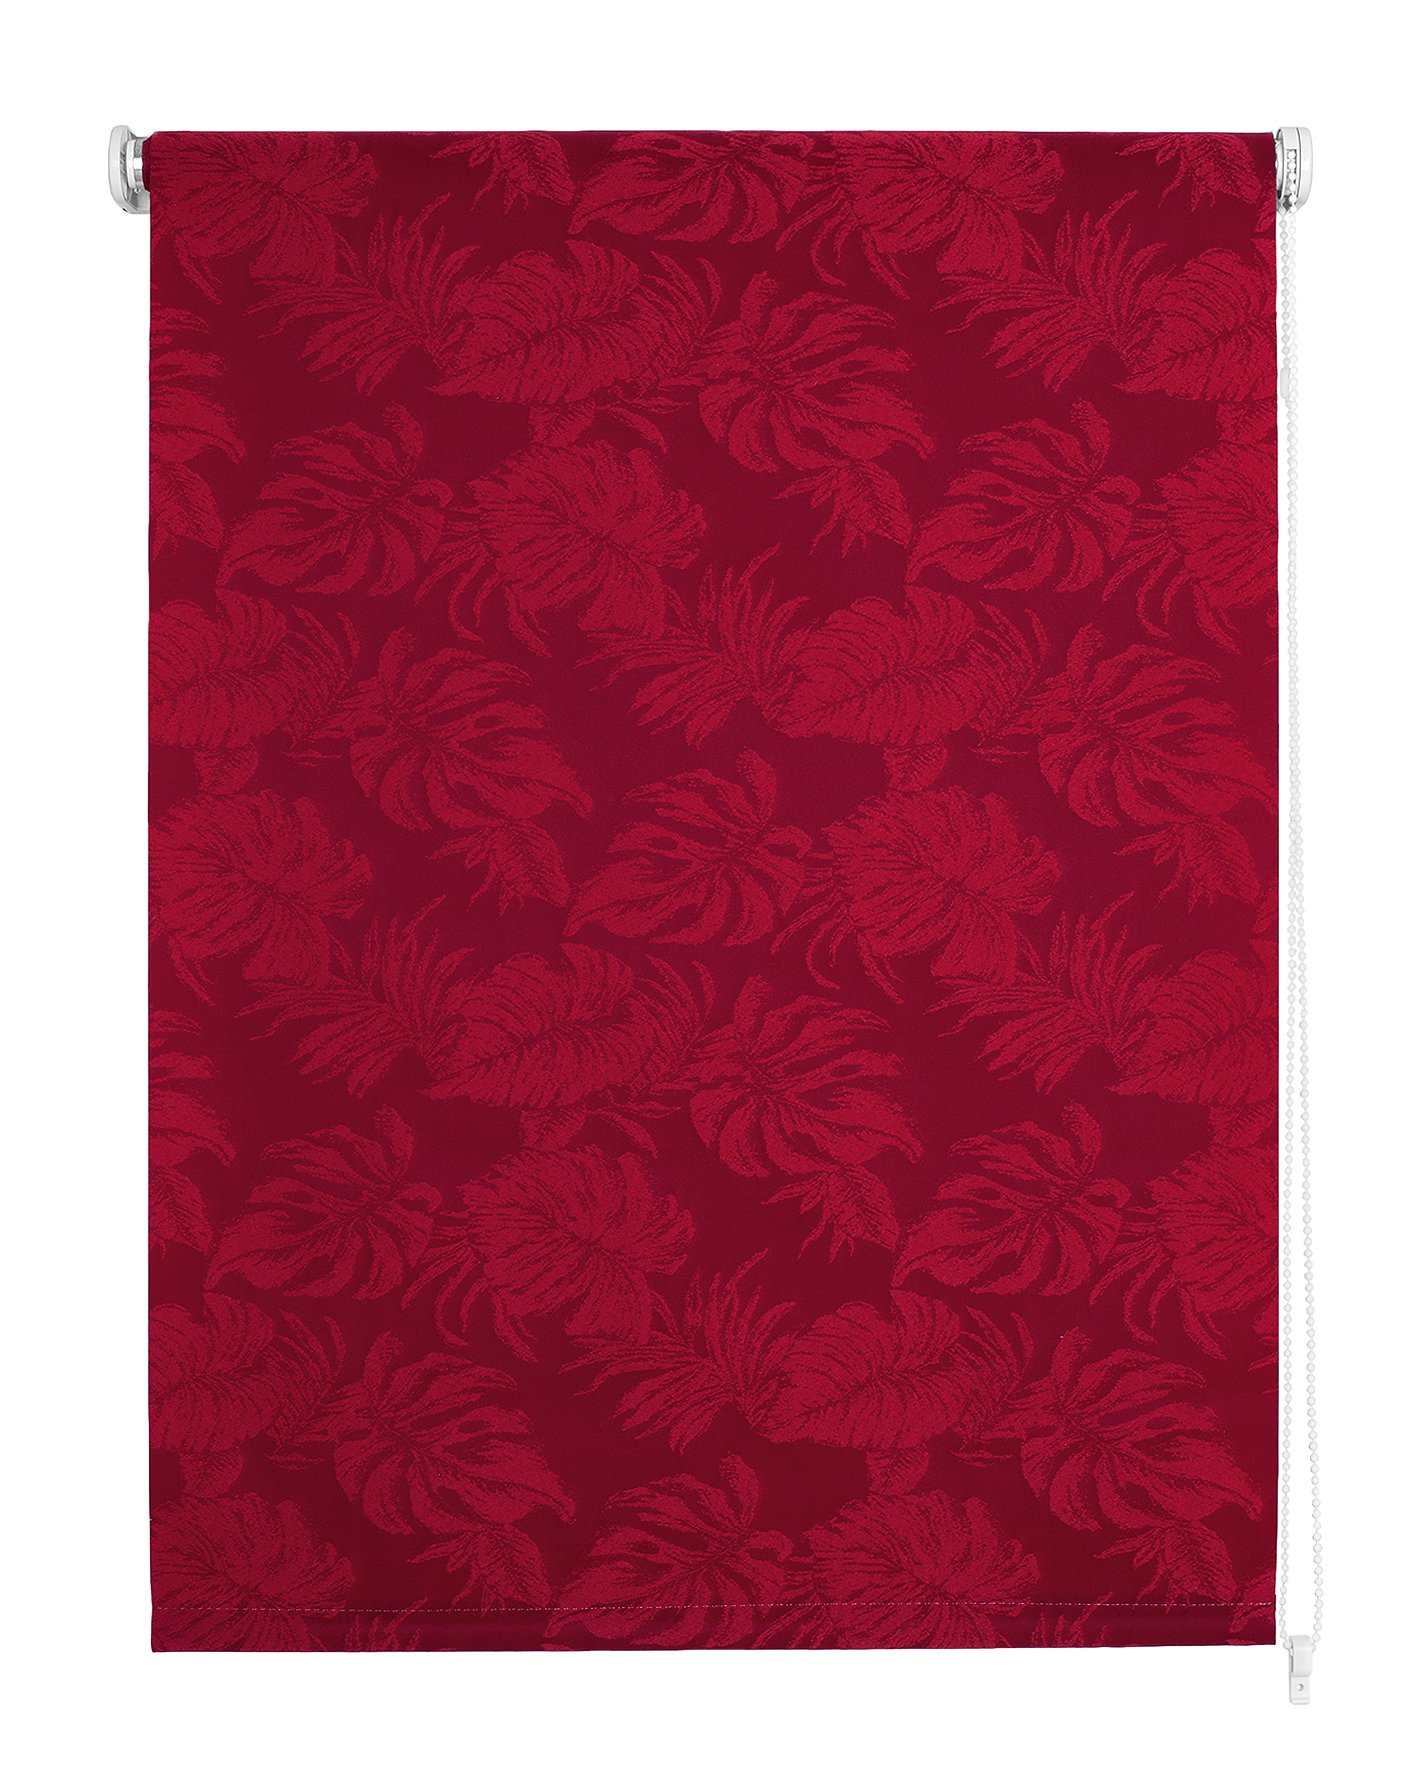 Klasikinė ritininė užuolaida OSLO, raudonos sp.,80 x 170 cm, 100 % poliesteris - 4